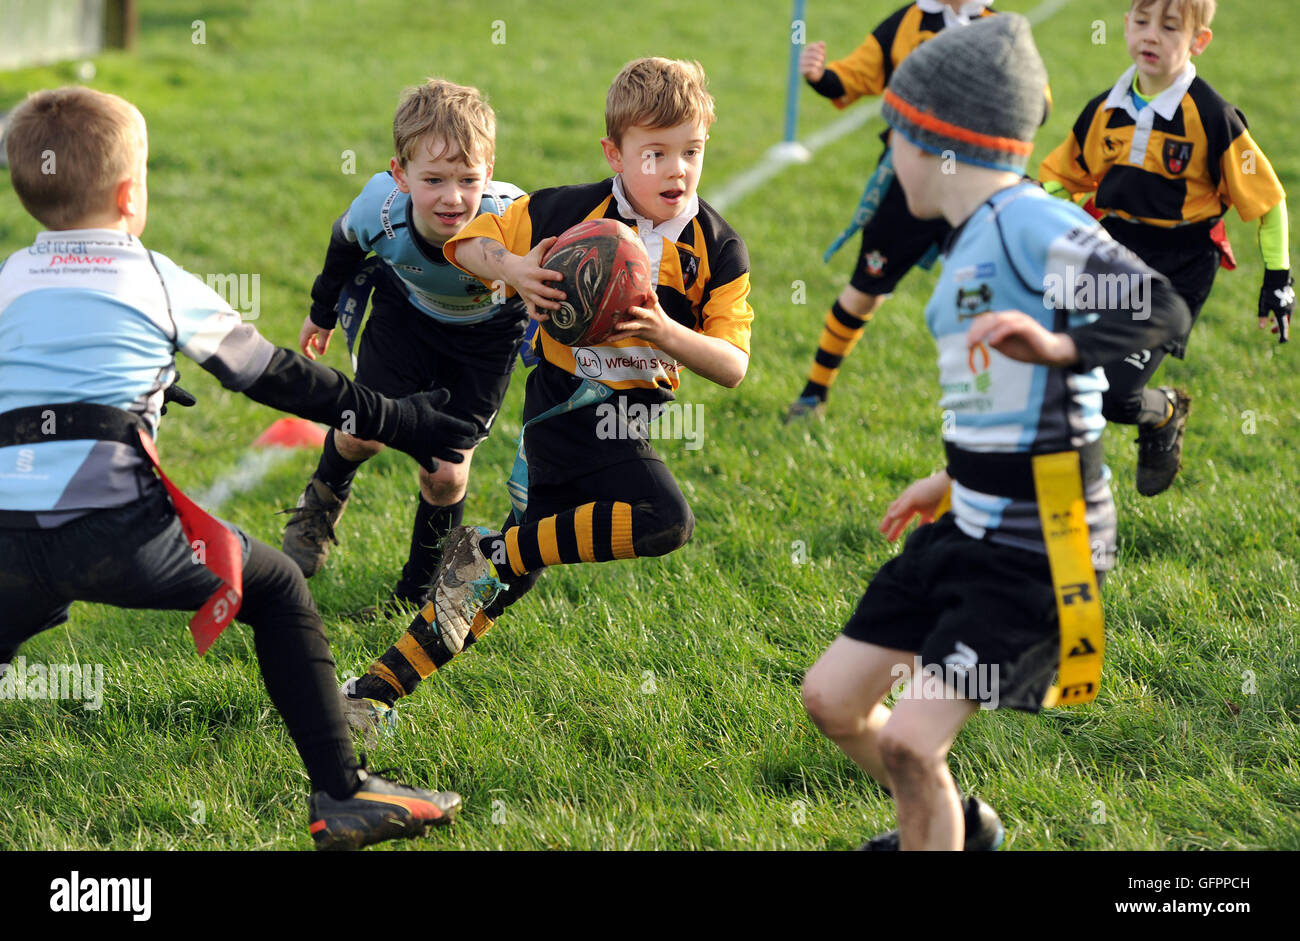 Niños junior tag rugby acción deporte niños gran bretaña reino unido Telford Hornets U7's v Bridgnorth U7's children deporte actividad saludable deportes para chicos Foto de stock